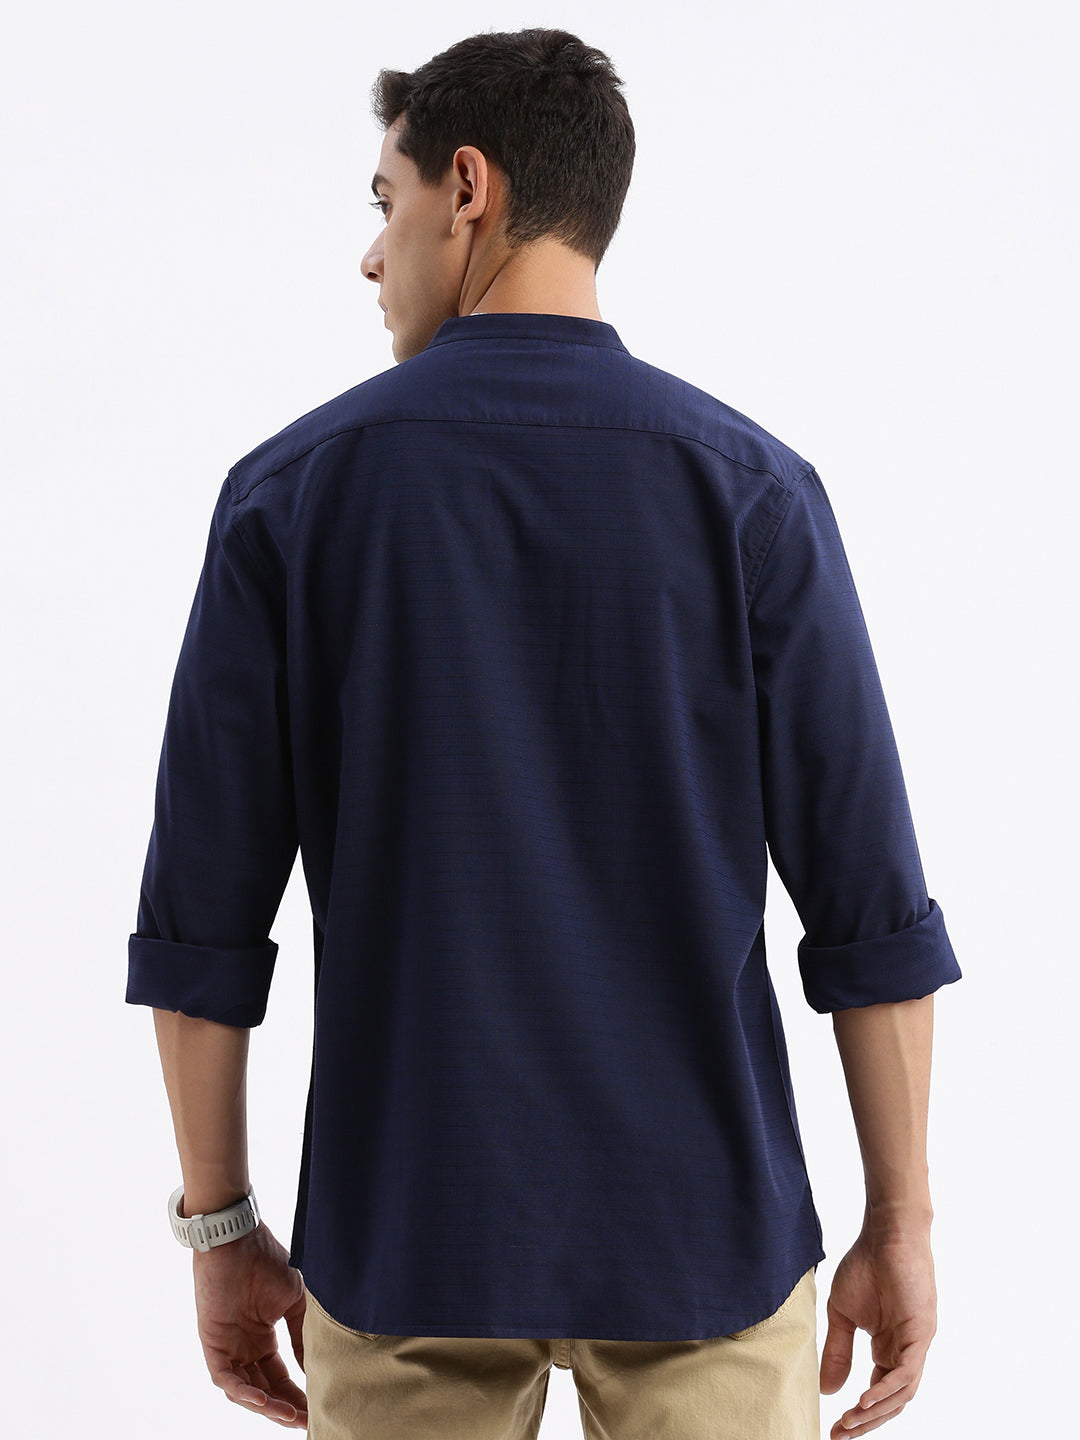 Men Mandarin Collar Solid Slim Fit Navy Blue Shirt